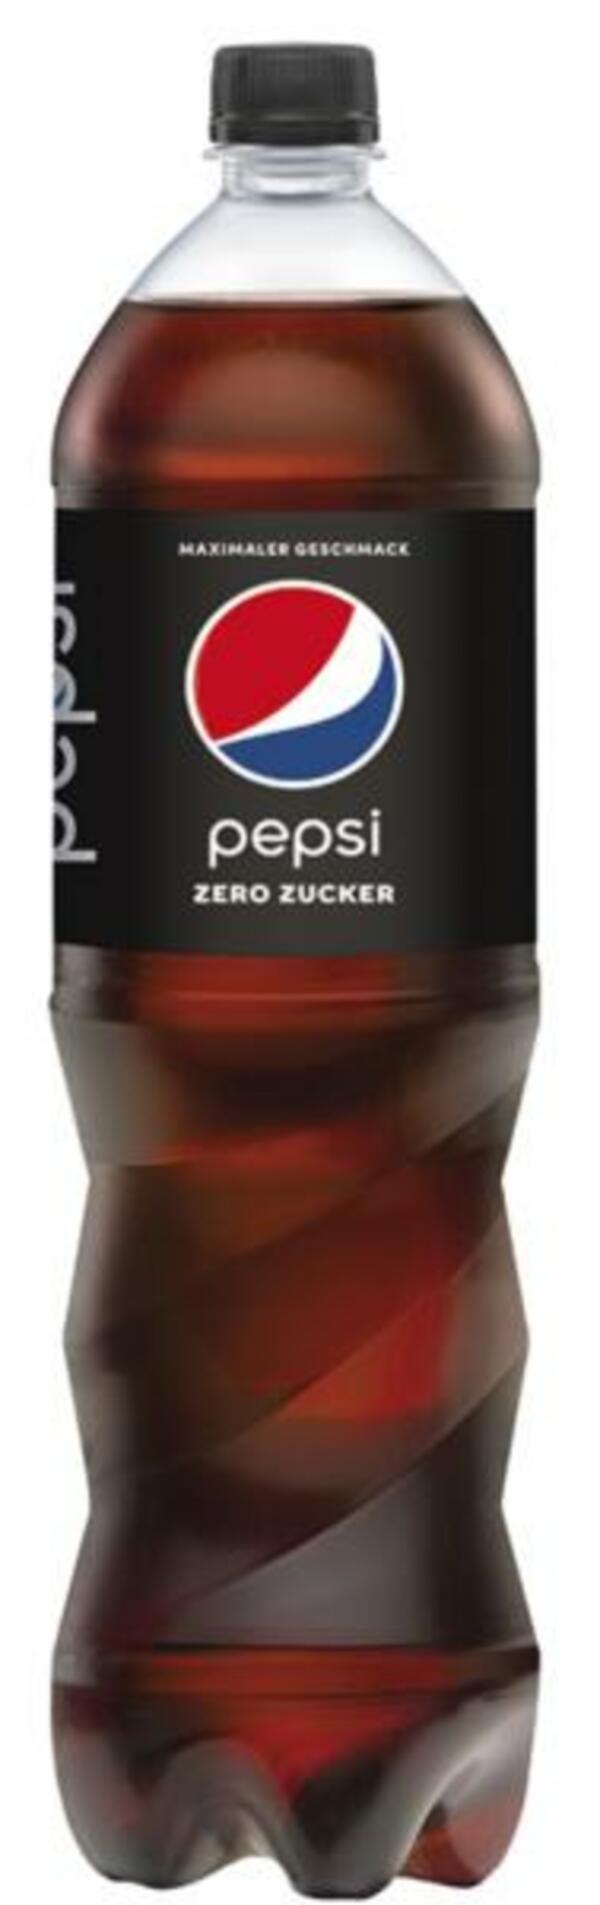 Bild 1 von Pepsi Zero Zucker (Einweg)